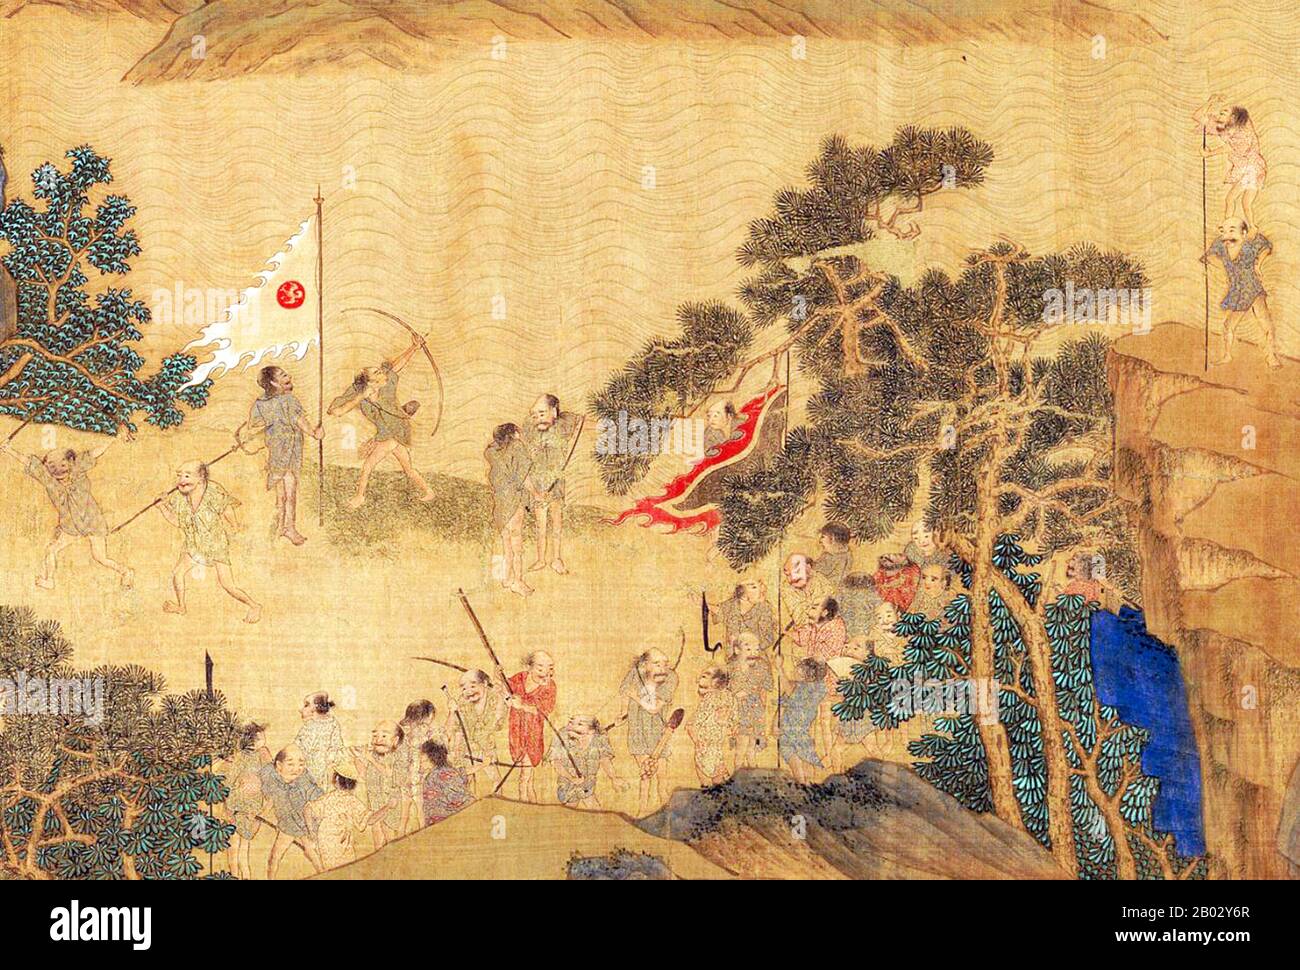 In den abschwellenden Jahren der Yuan-Dynastie (1279-1368) überfielen Wokou (japanische Piraten) mit zunehmender Regelmäßigkeit die Küstenprovinzen Ostchinas. Trotz der Niederlage in Shandong 1363 setzten sich die regierenden Parteien fort und drängten noch weiter nach Süden entlang der Küste in die Provinz Fujian. Die Schriftrolle zeigt in ihrer Gesamtheit eine Gruppe japanischer Piraten, die in einer Küstengemeinde landen, lokale Residenzen aufsuchen und überfallen, die Flucht von Flüchtlingen und die Reaktion der Ming-Truppen, die das Gebiet in einer angespannten Schlacht auf dem Wasser verteidigen. Stockfoto